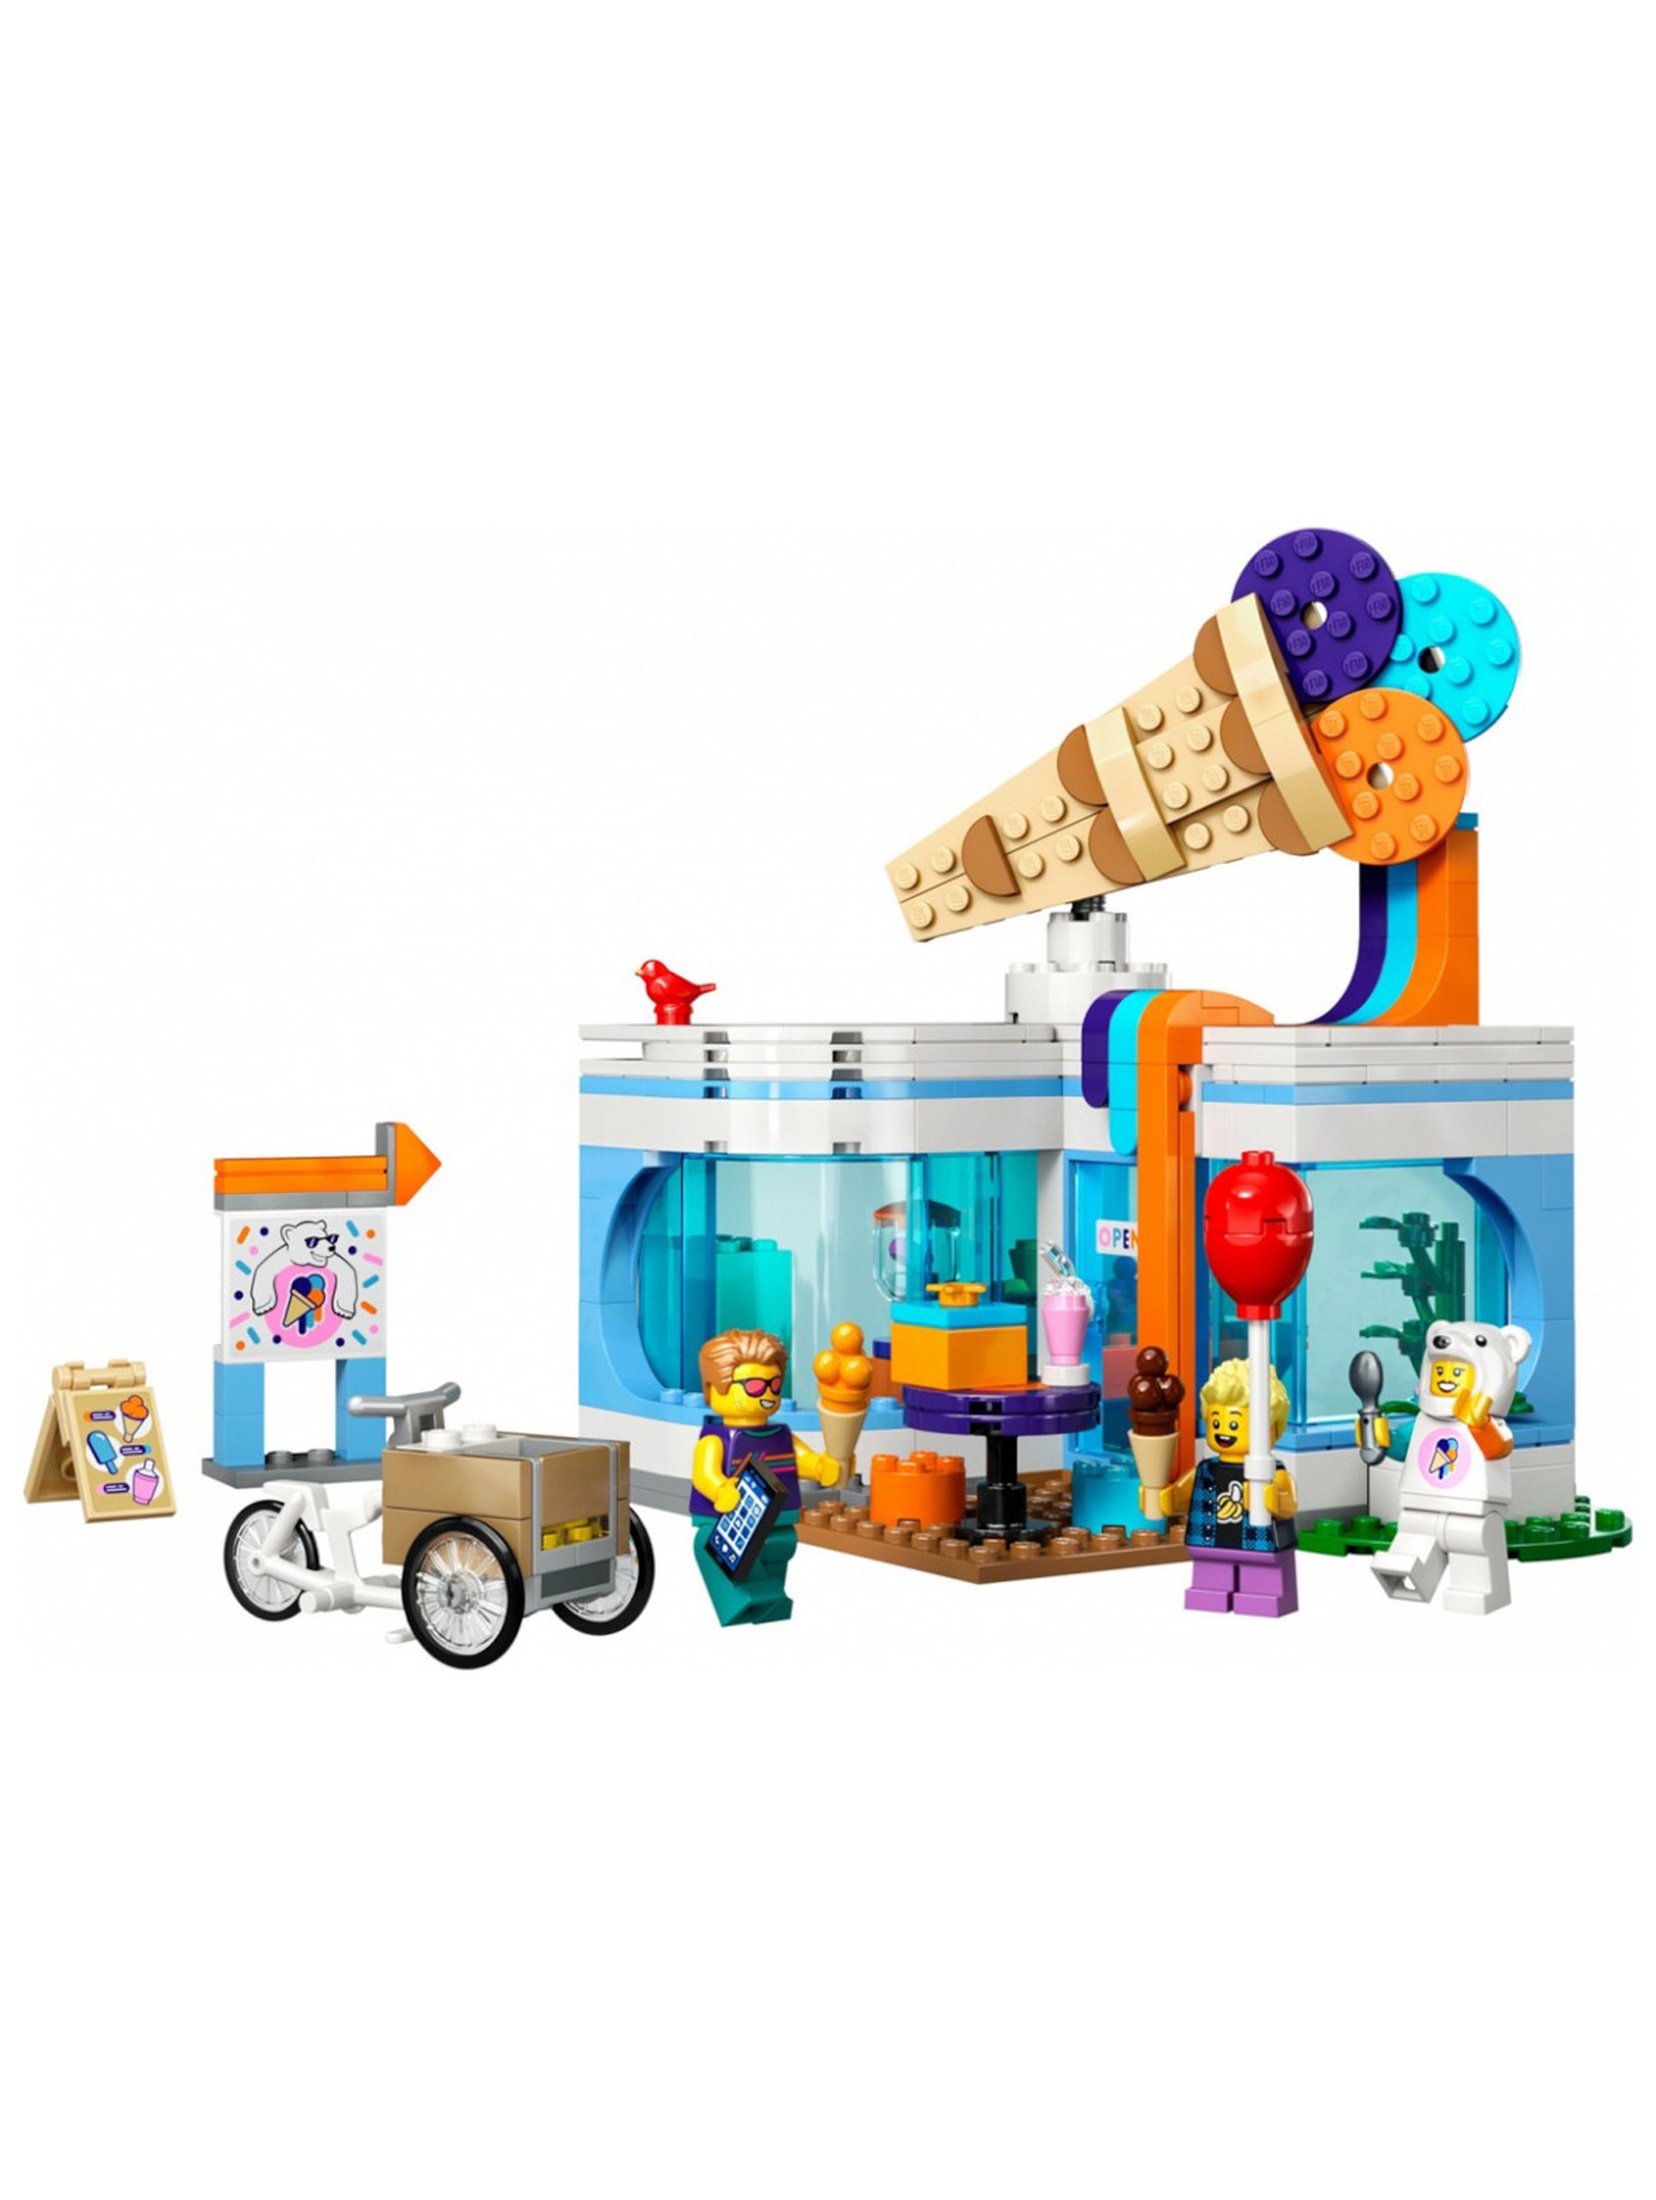 Klocki LEGO City 60363 Lodziarnia - 296 elementów, wiek 6 +